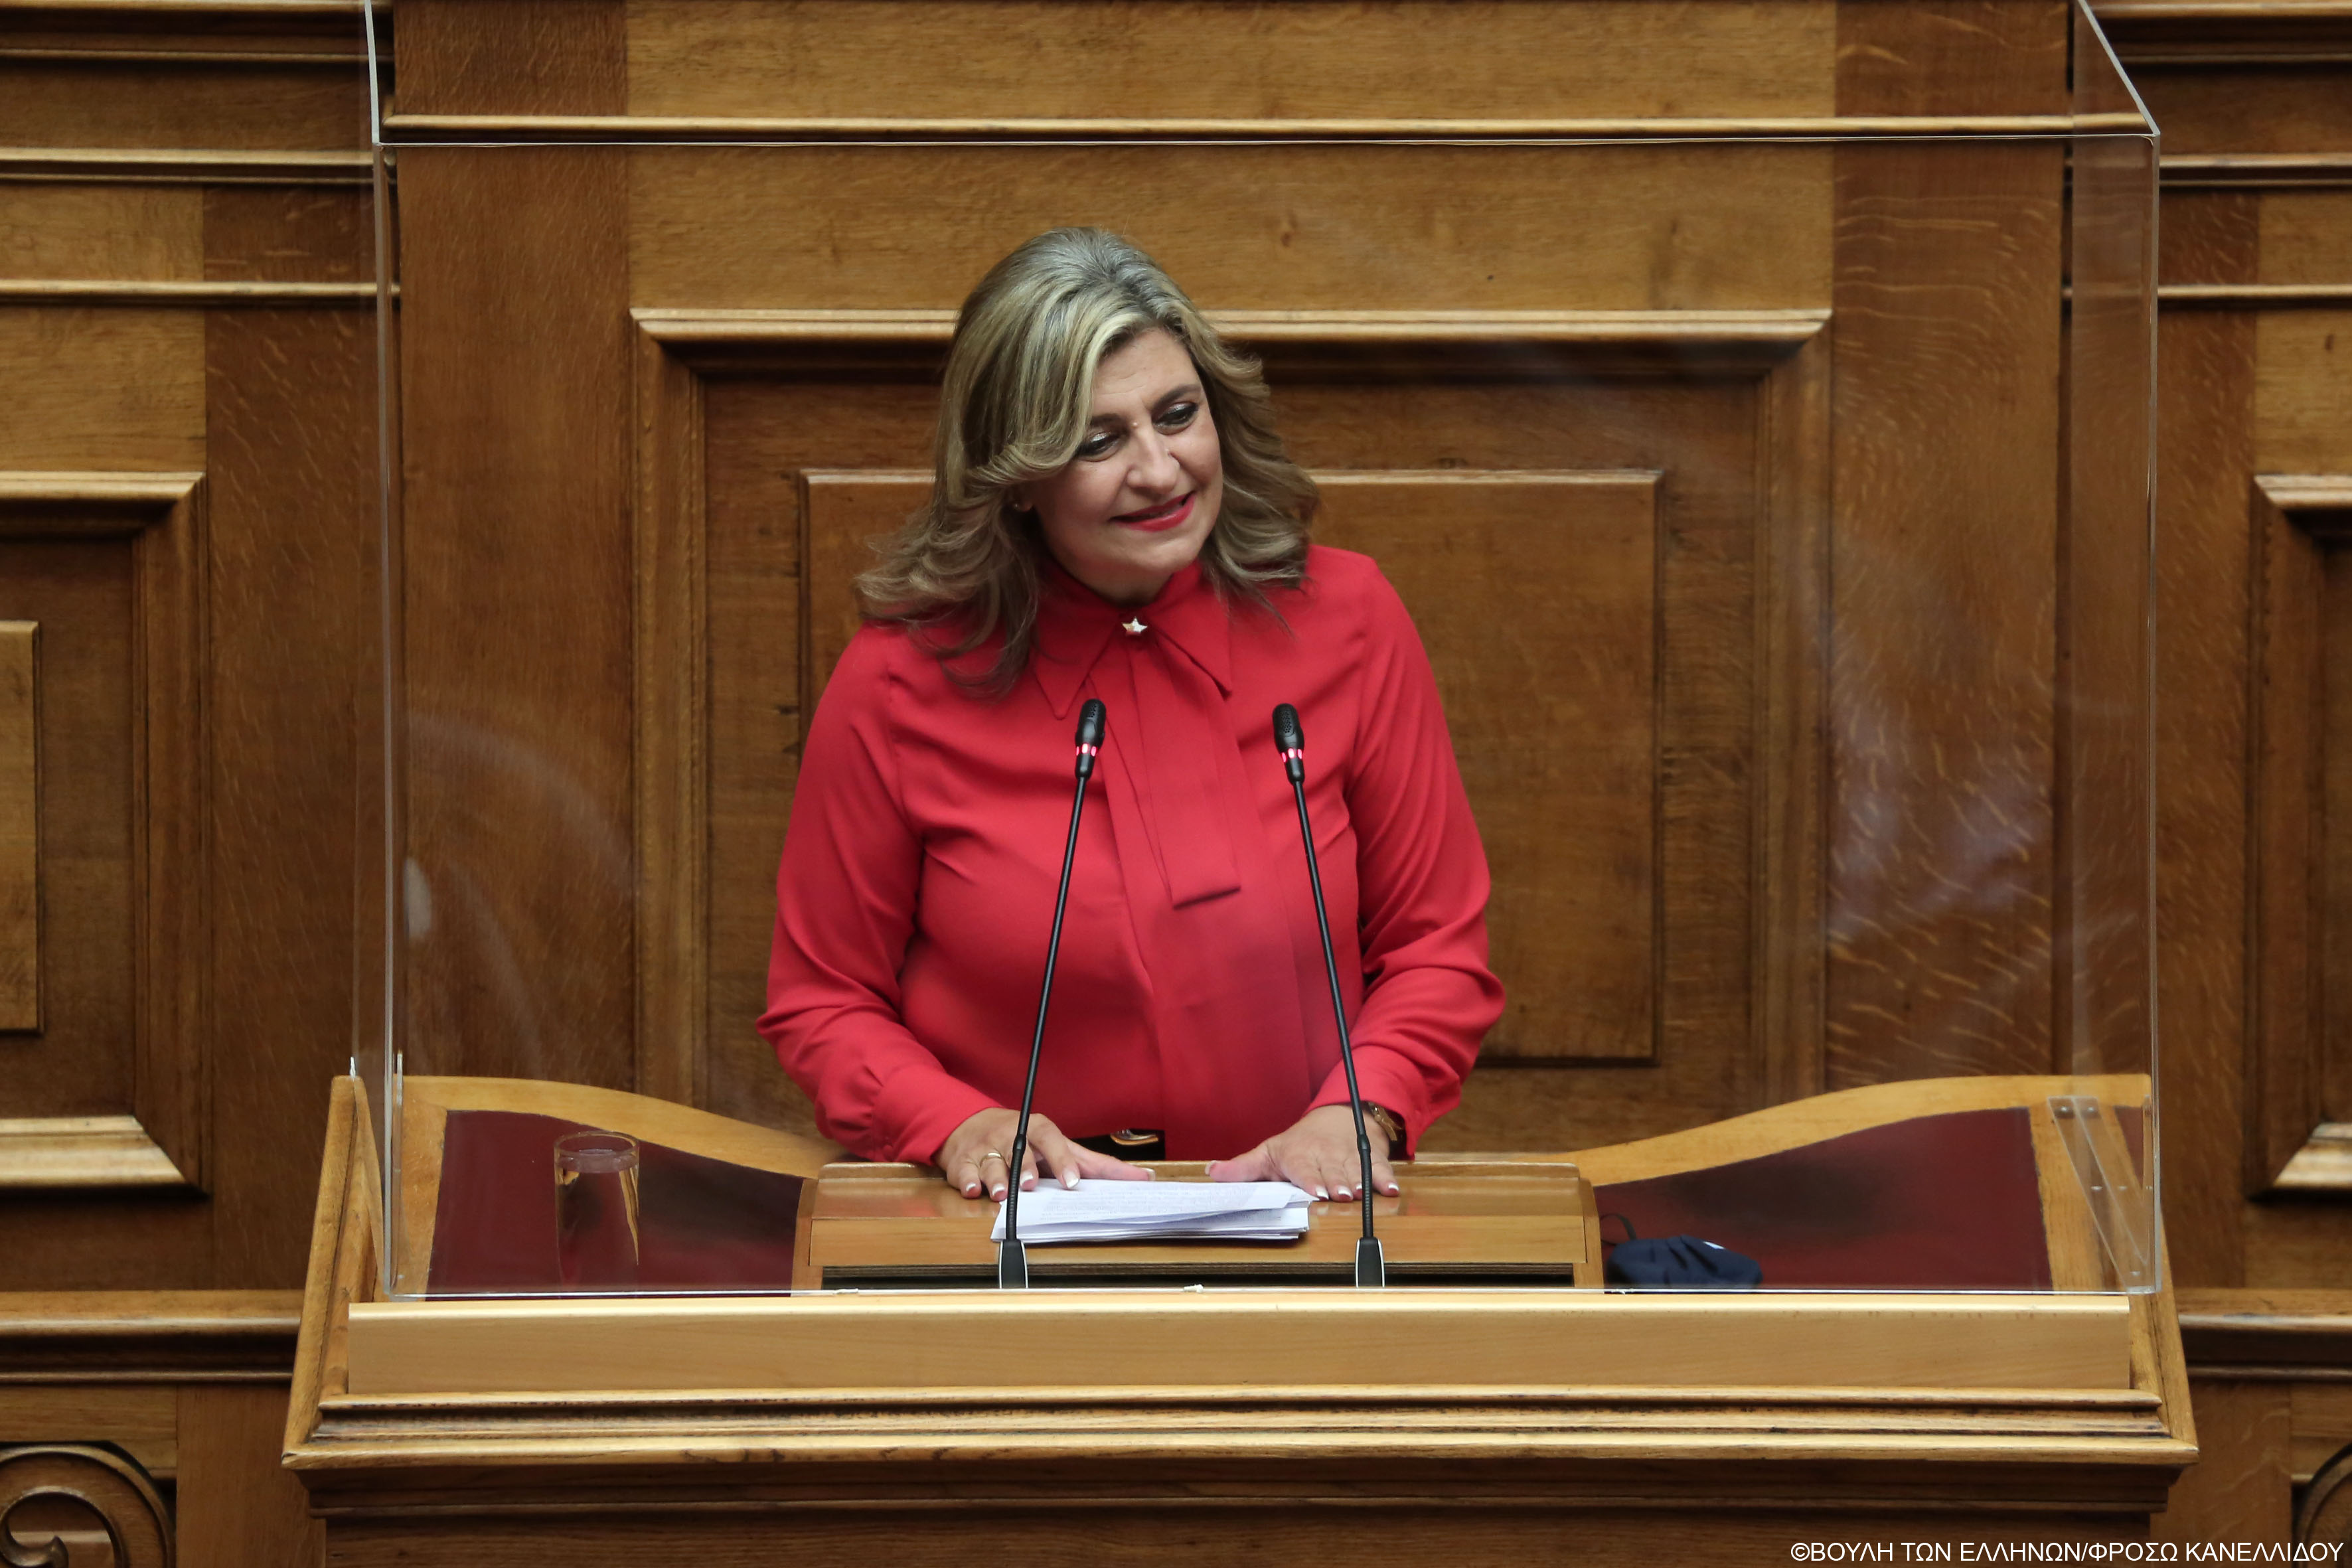 Λιακούλη: "Ο κ. Μητσοτάκης πιστεύει σε δύο "δημοκρατίες": αυτή που περιγράφει στο Κογκρέσο και αυτή που επιβάλλει στην Ελλάδα!"